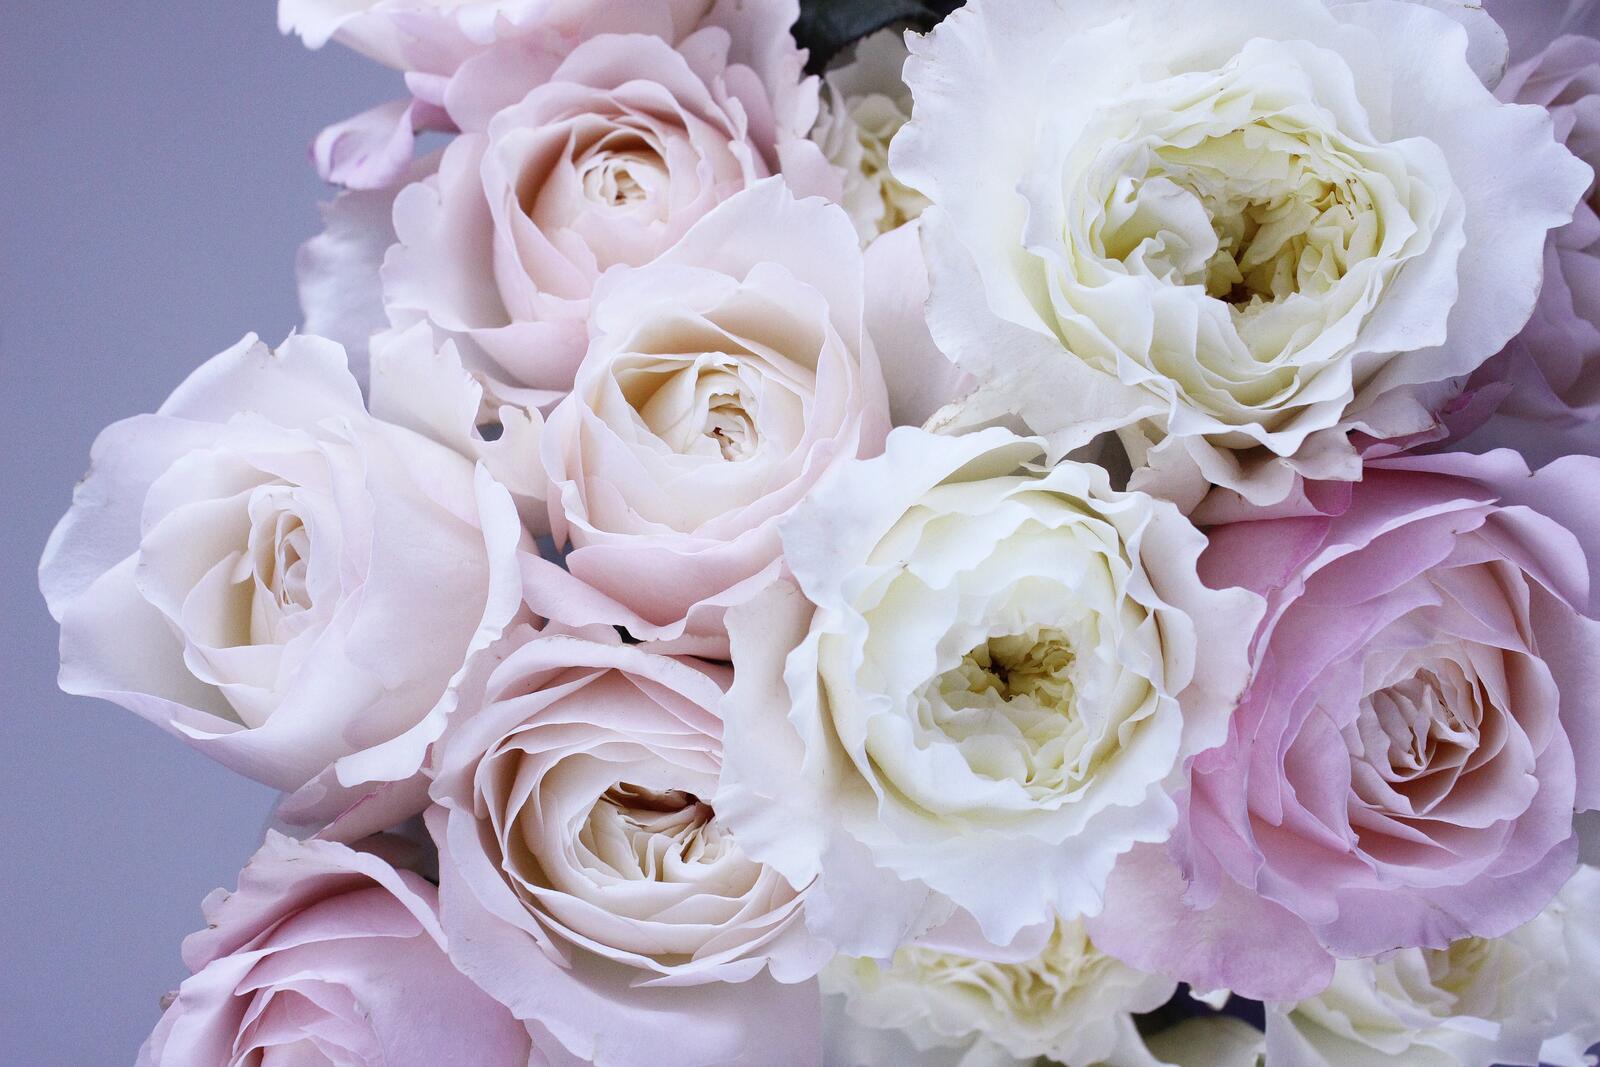 免费照片非常漂亮的白色和粉色玫瑰花束